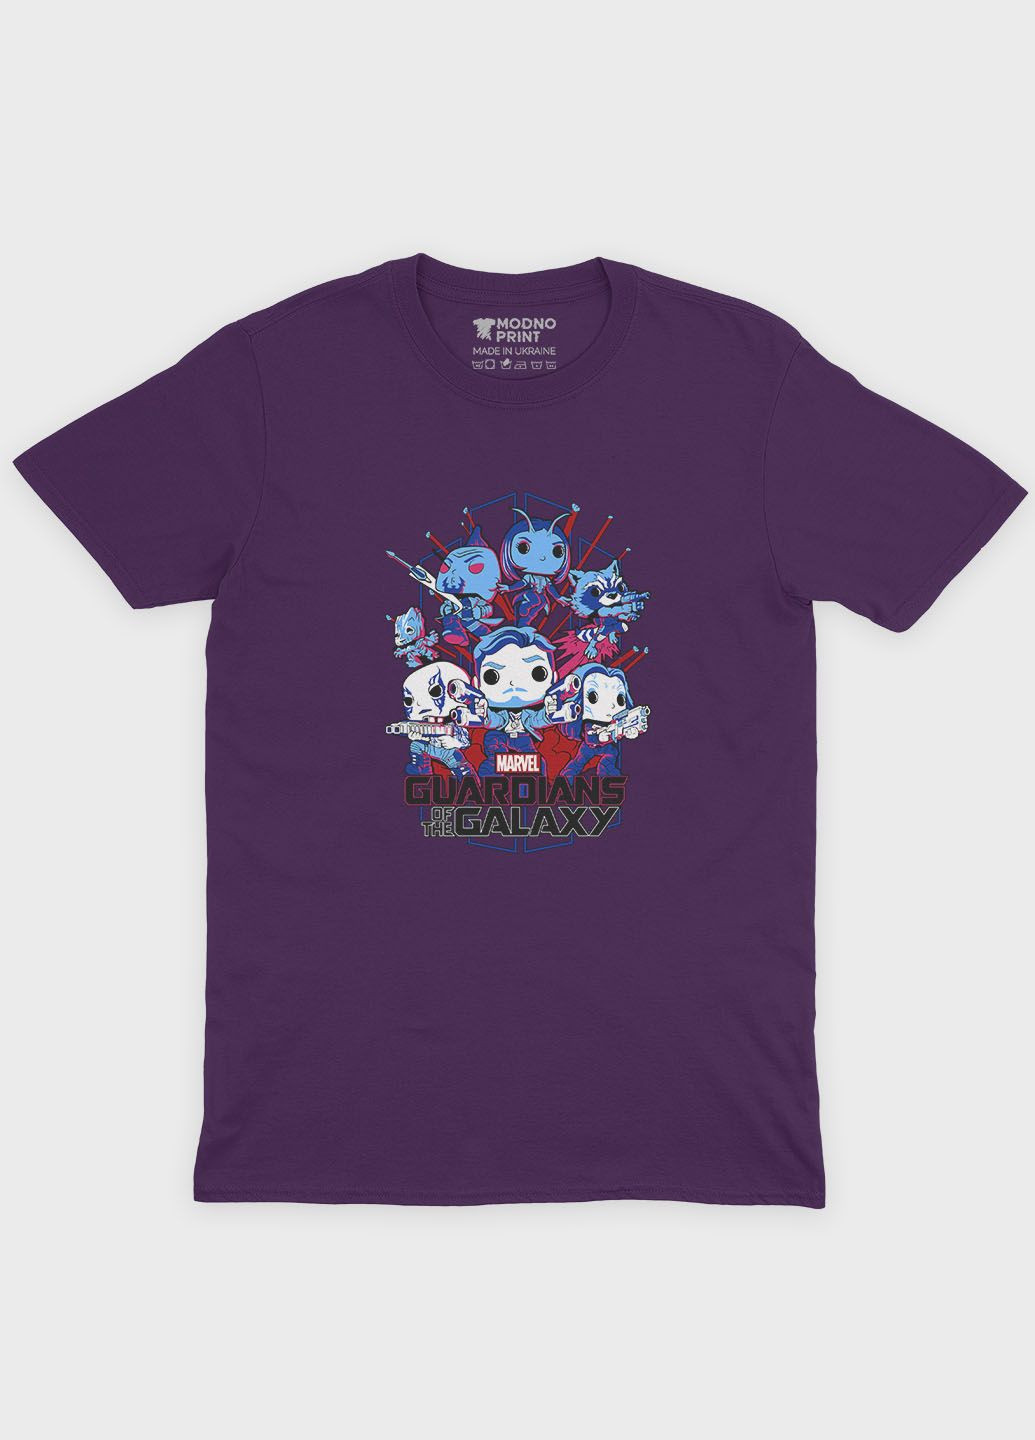 Фиолетовая демисезонная футболка для девочки с принтом супергероев - часовые галактики (ts001-1-dby-006-017-002-g) Modno